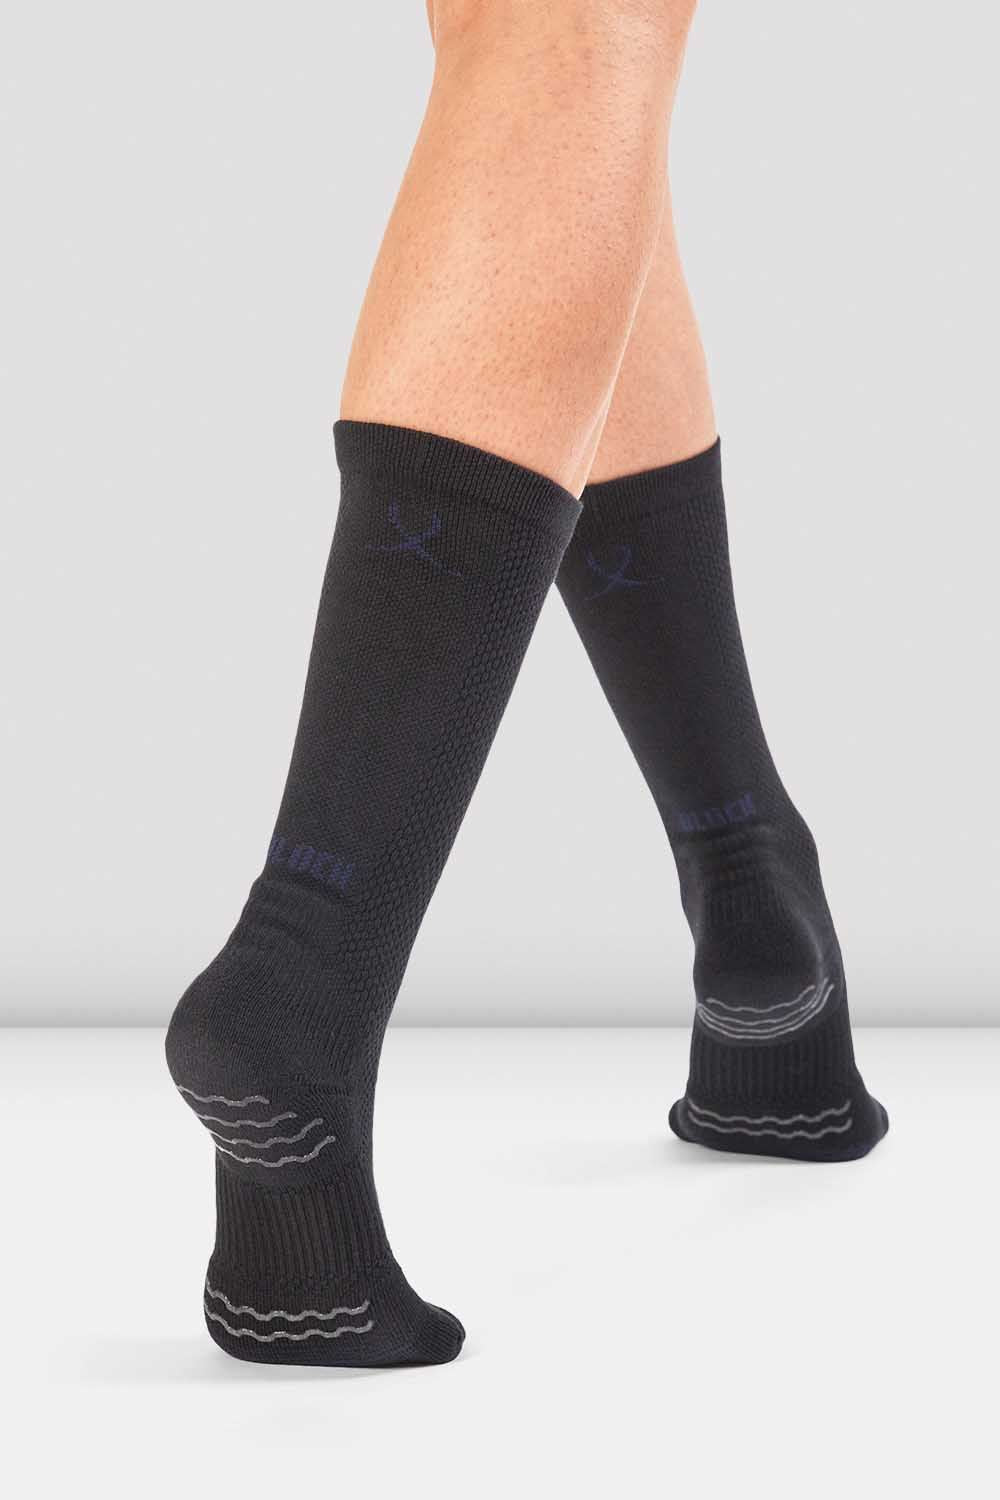 Buy DANCESOCKS black dance socks shoe socks for smooth floors